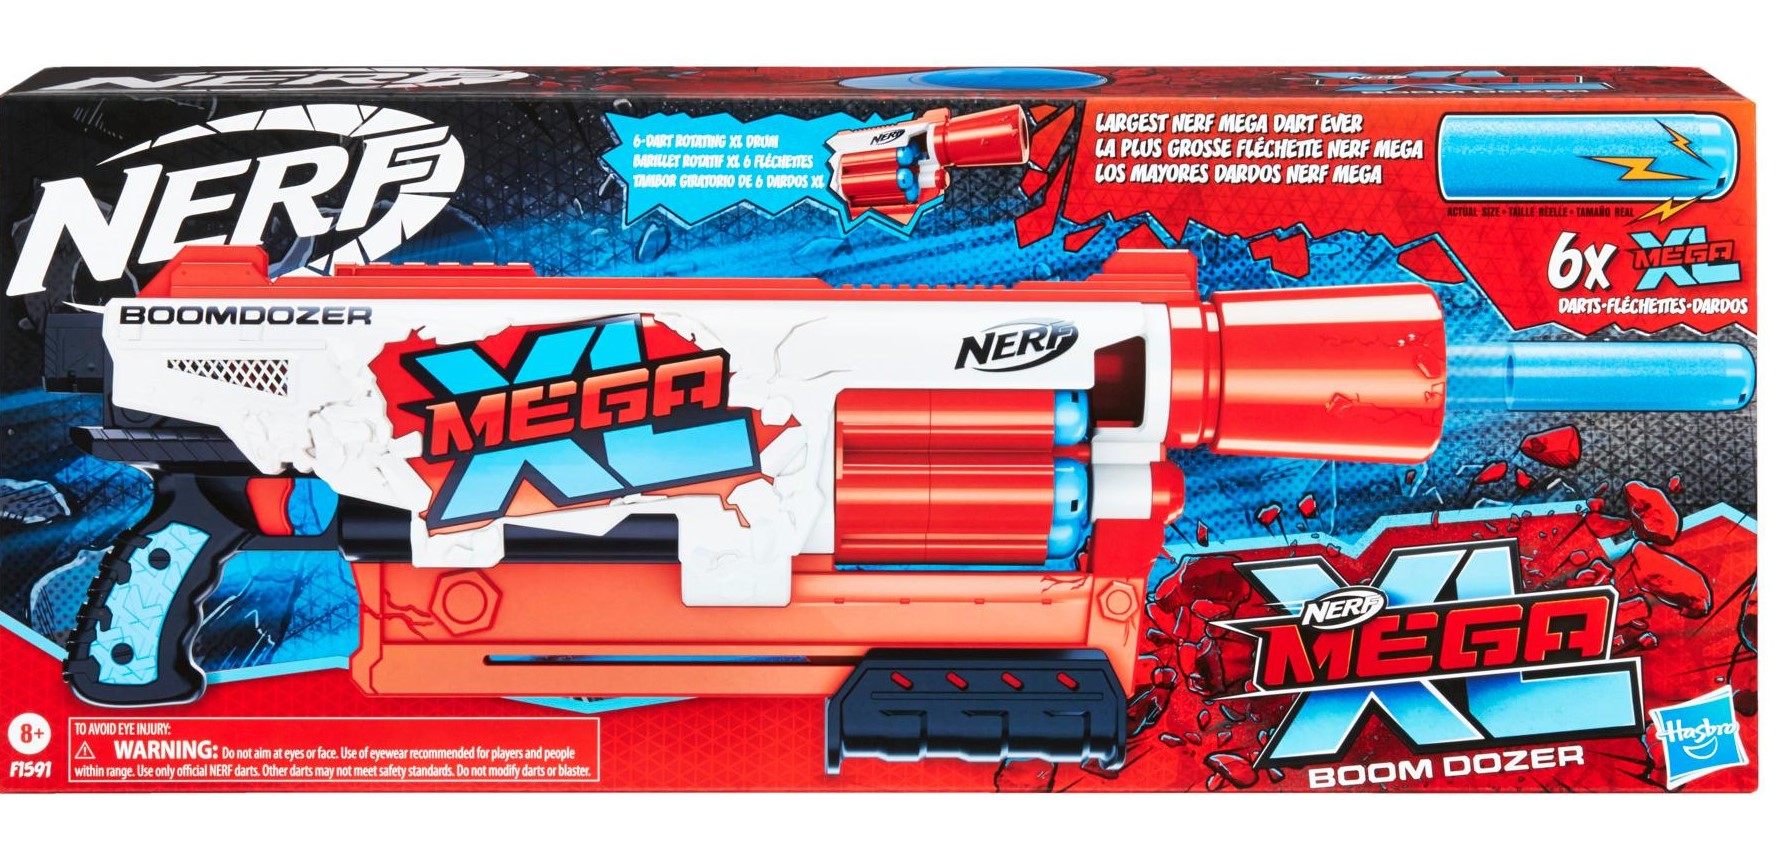  NERF Mega XL Boom Dozer Blaster, Mega Dardos más grandes de la  historia, tambor giratorio XL de 6 dardos, 6 dardos Whistler Mega XL,  acción de bomba : Todo lo demás